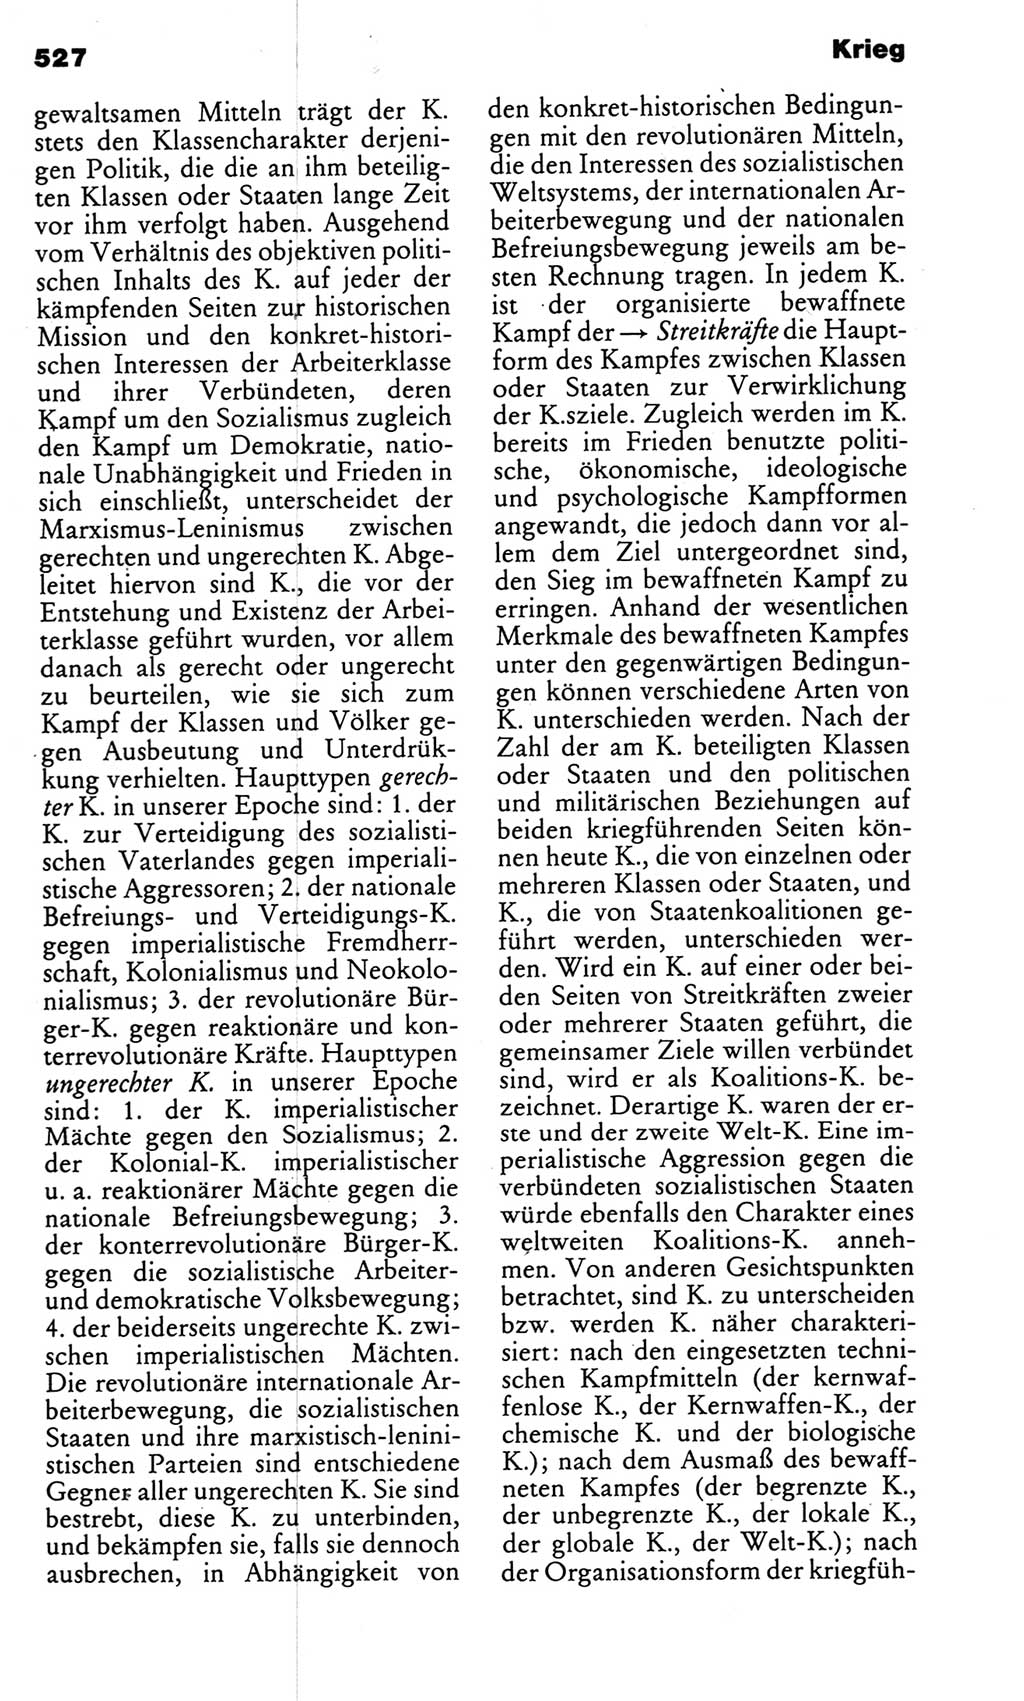 Kleines politisches Wörterbuch [Deutsche Demokratische Republik (DDR)] 1983, Seite 527 (Kl. pol. Wb. DDR 1983, S. 527)